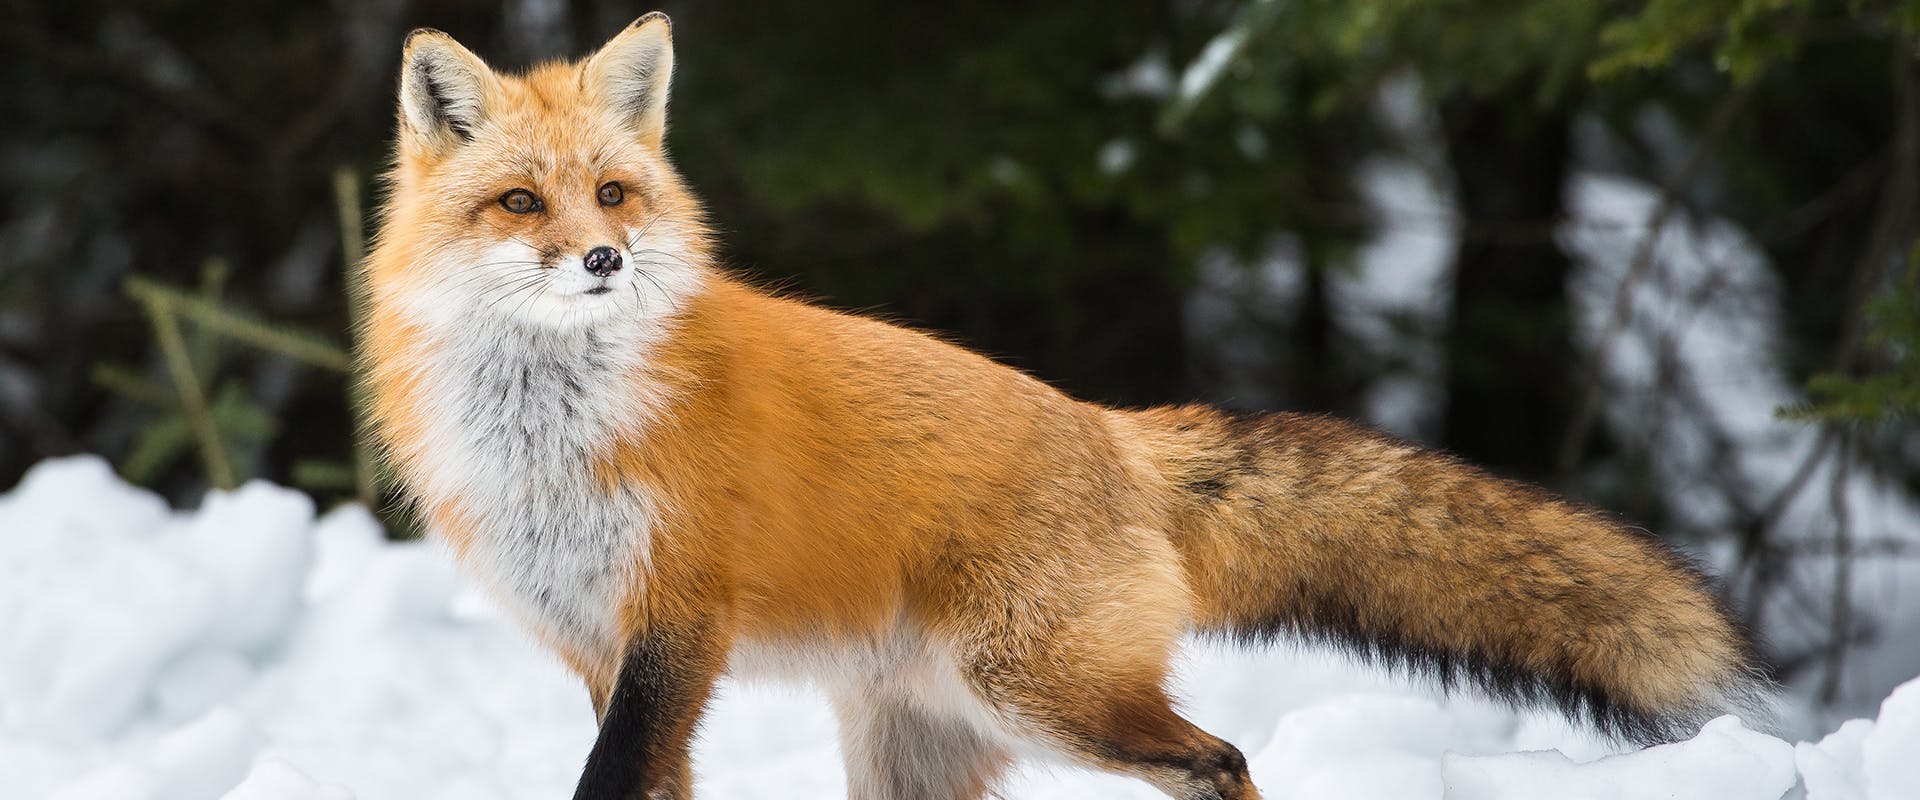 A fox walking through the snow